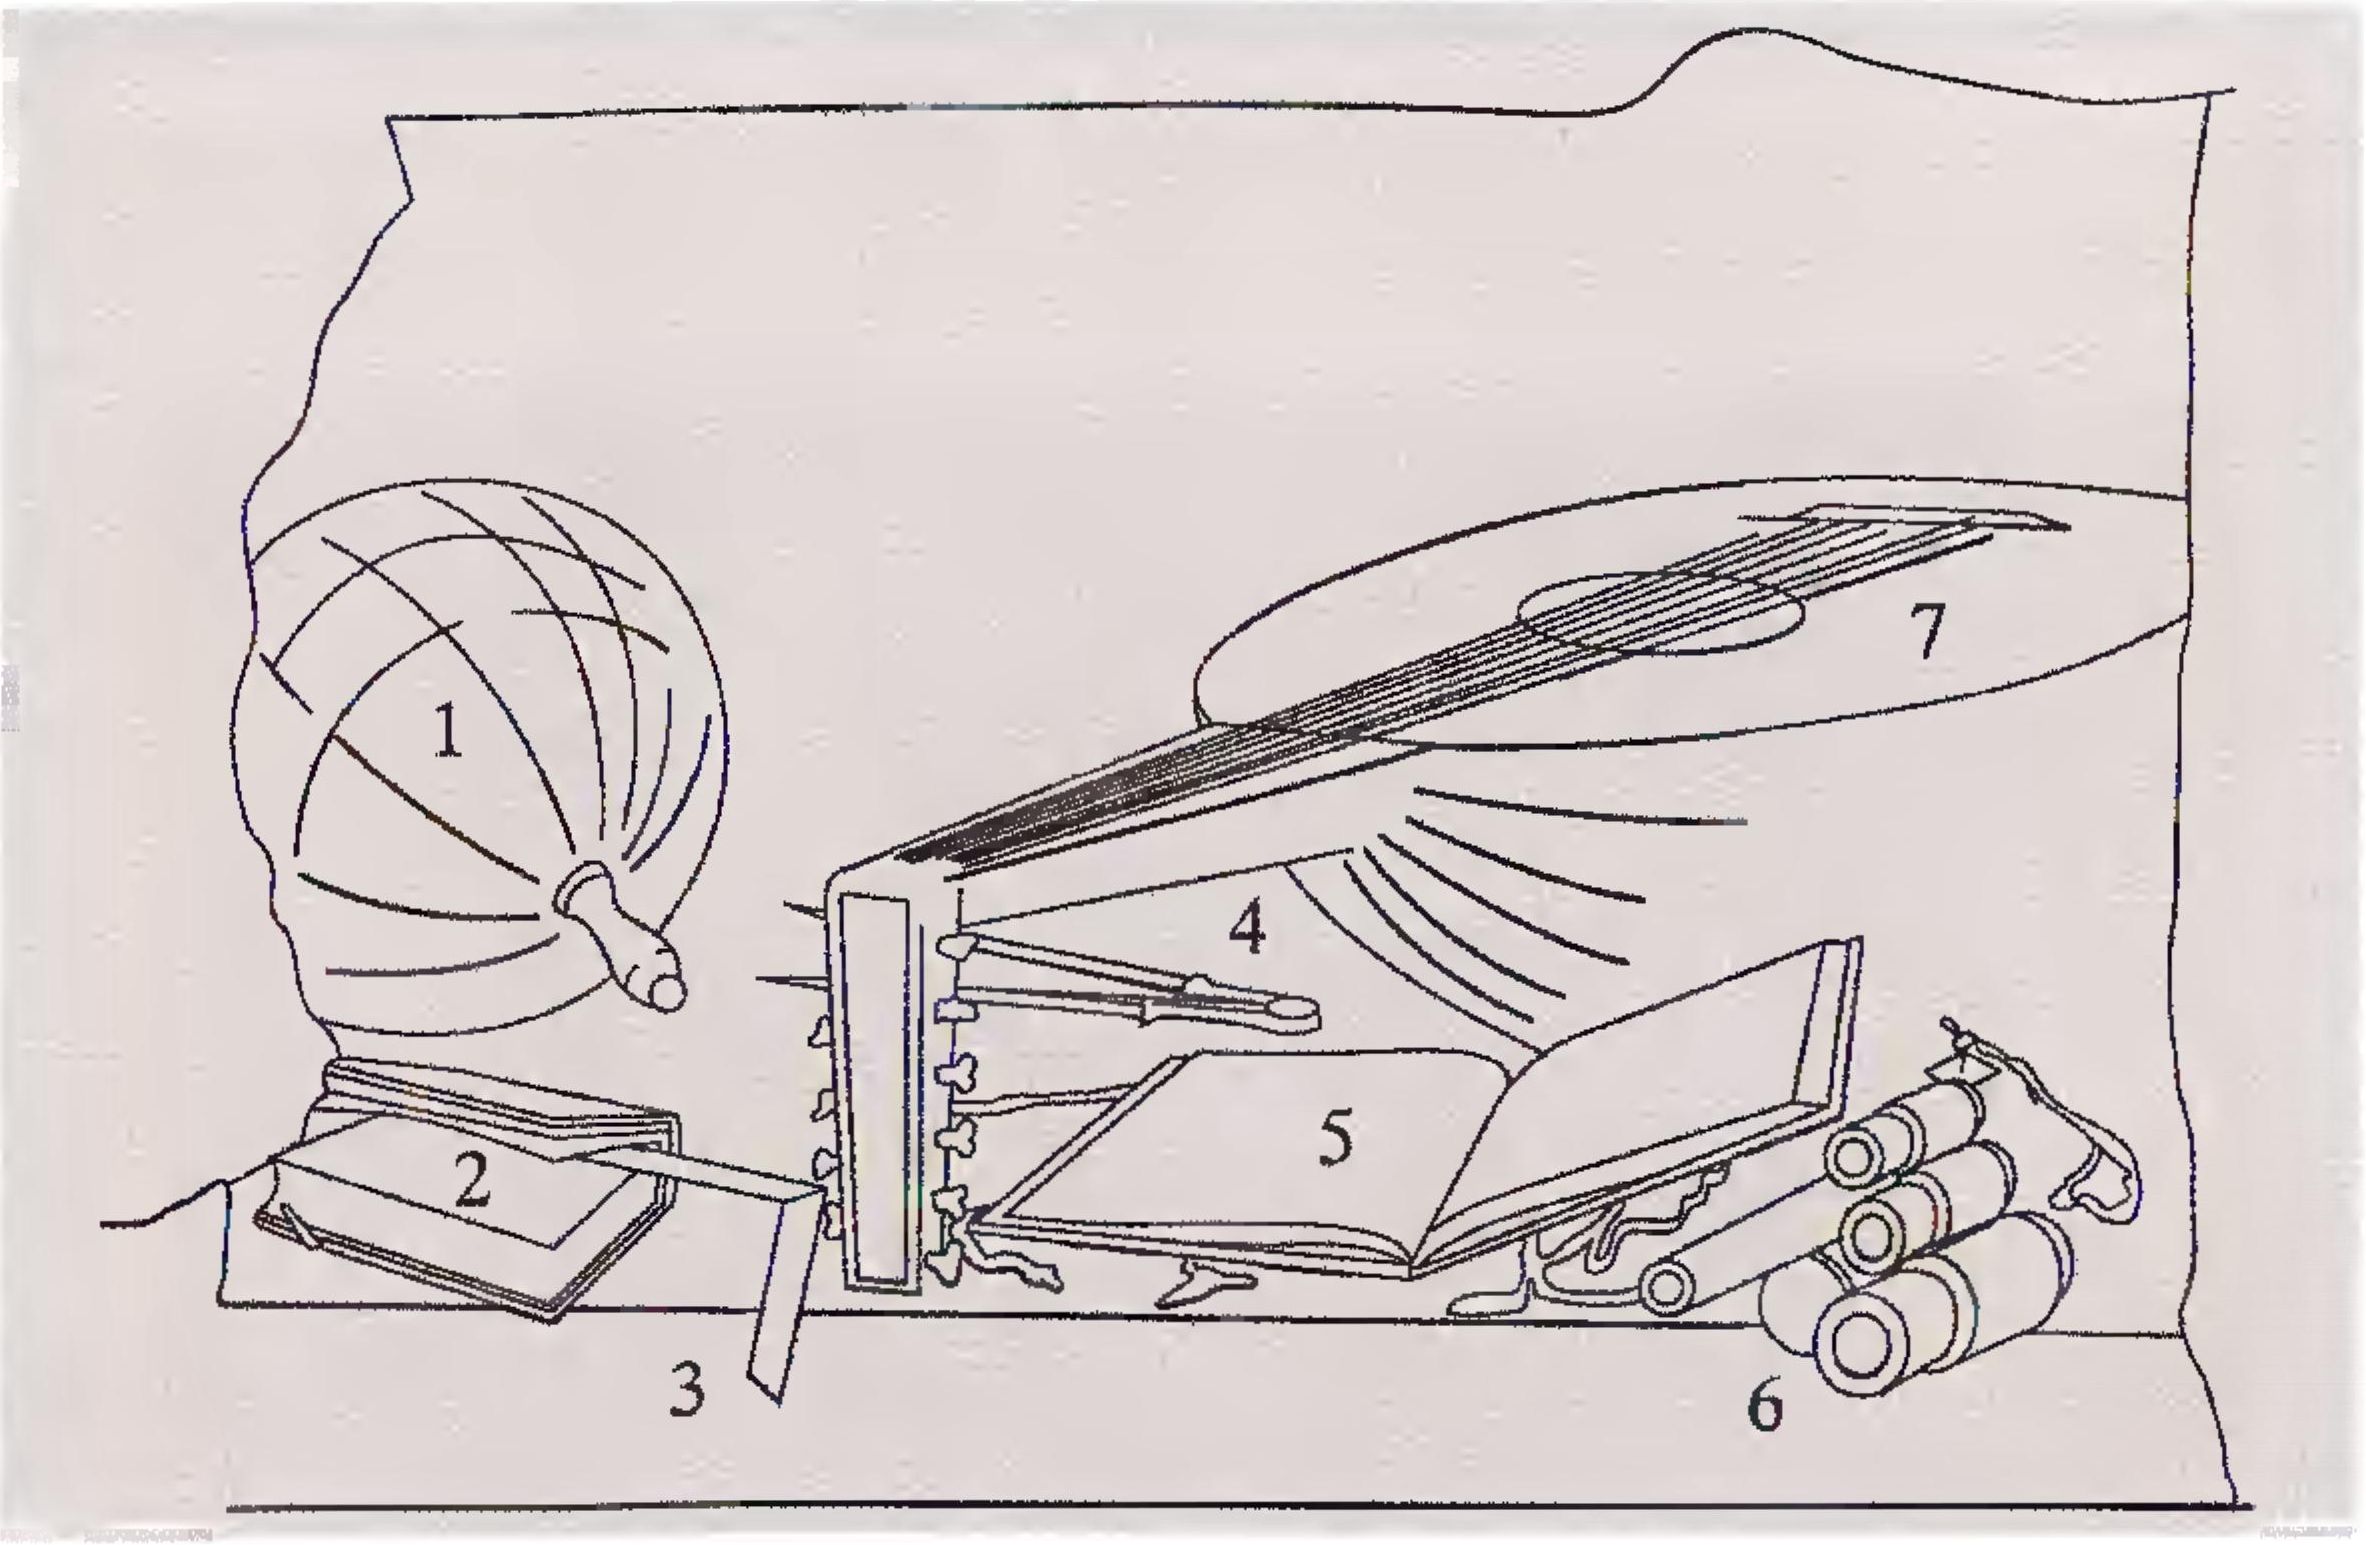 Схематичное изображение предметов на нижней полке: 1. глобус Земли; 2. учебник арифметики; 3. угловая линейка; 4. циркуль; 5. немецкая псалтырь; 6. футляр для флейты; 7. лютня